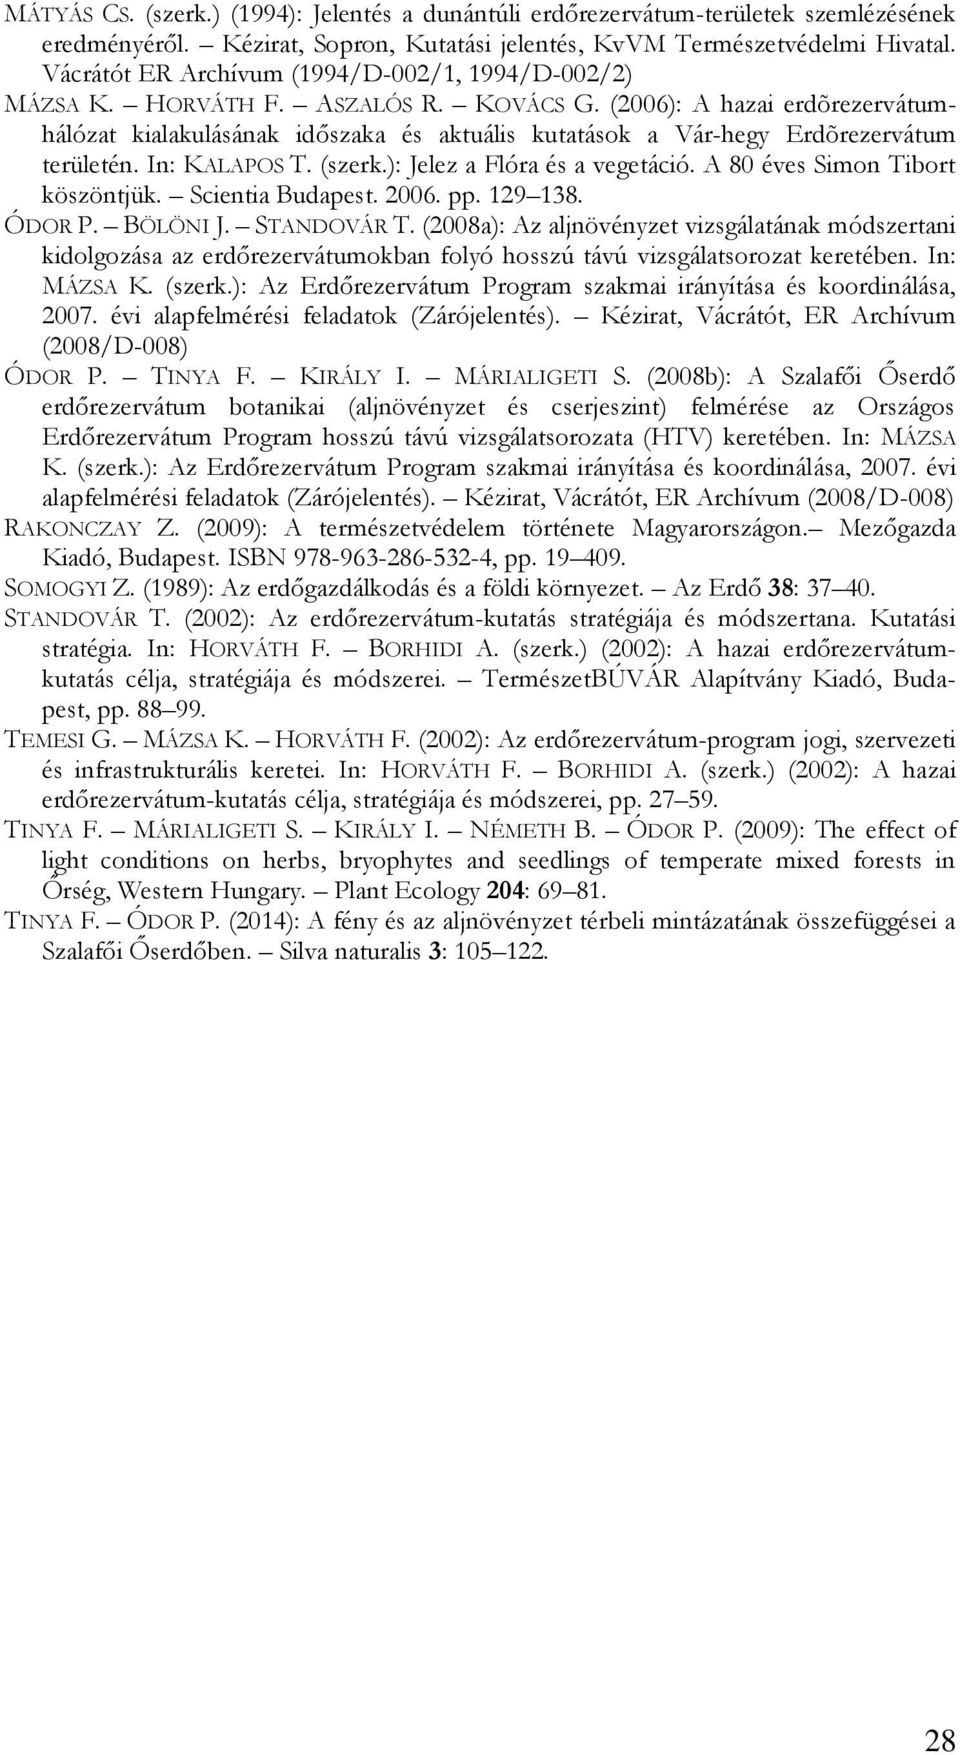 (2006): A hazai erdõrezervátumhálózat kialakulásának időszaka és aktuális kutatások a Vár-hegy Erdõrezervátum területén. In: KALAPOS T. (szerk.): Jelez a Flóra és a vegetáció.